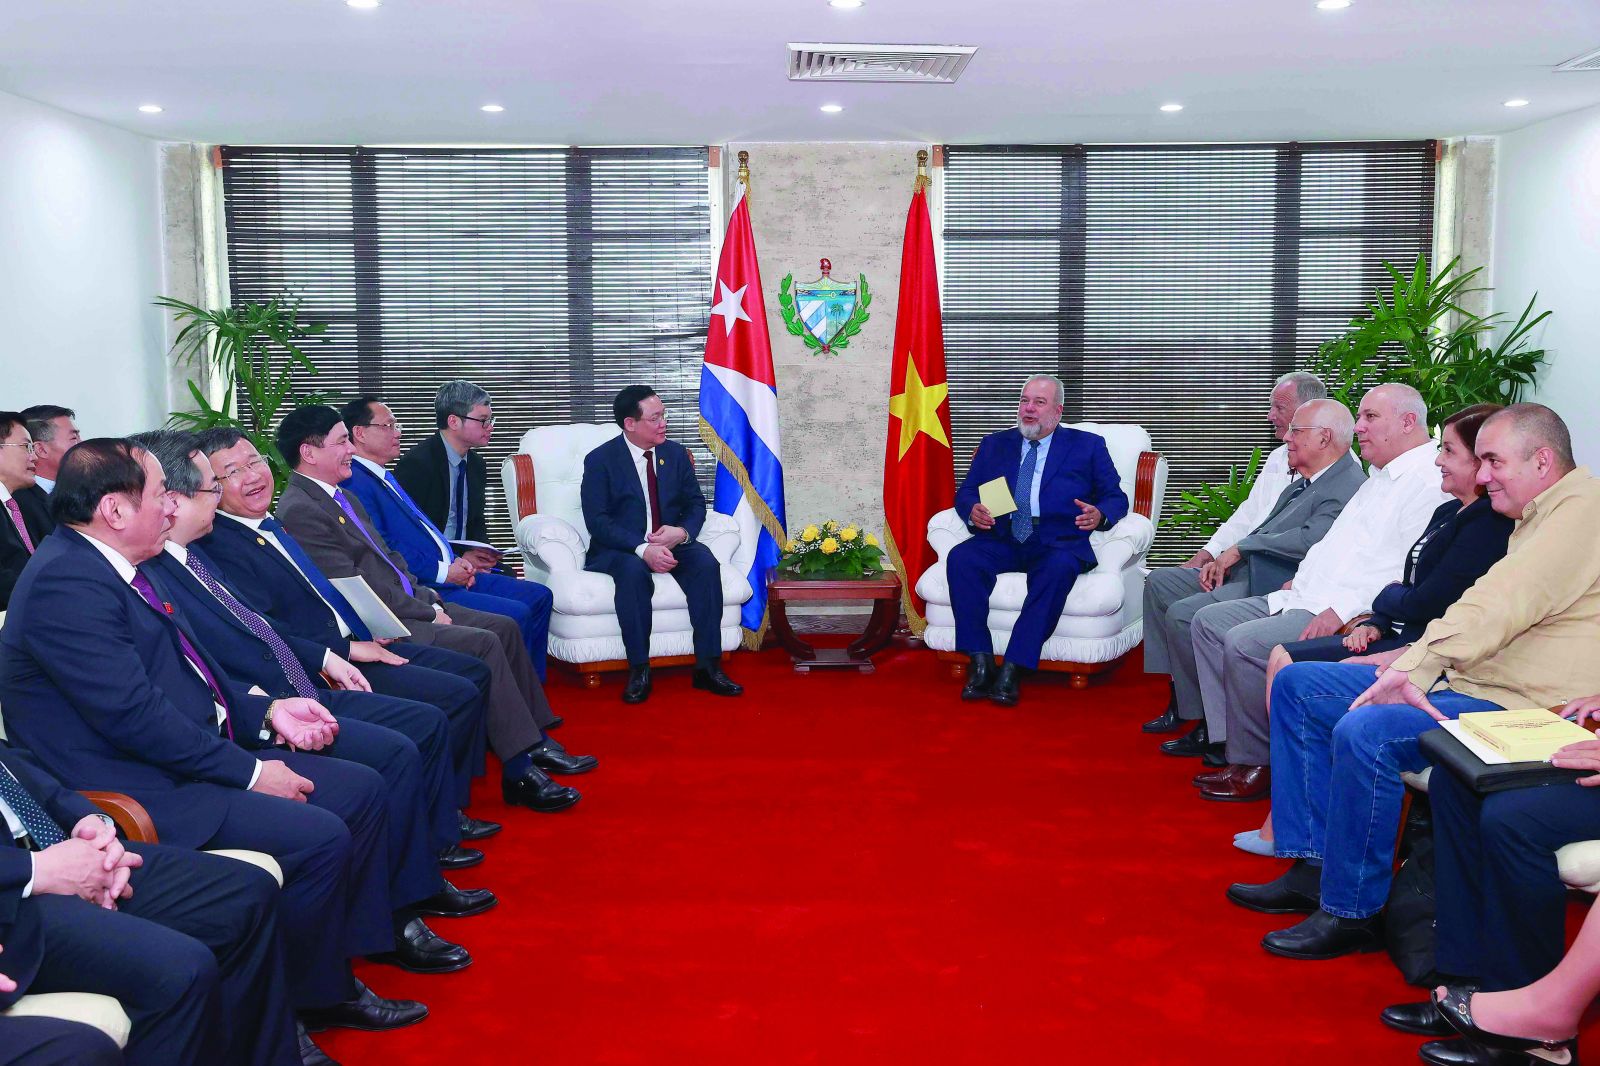 Chủ tịch Quốc hội Vương Đình Huệ hội kiến Thủ tướng Cuba Manuel Marrero Cruz trong chuyến thăm chính thức của Đoàn đại biểu cấp cao Quốc hội Việt Nam tại Cộng hòa Cuba từ ngày 18 - 23/4/2023.